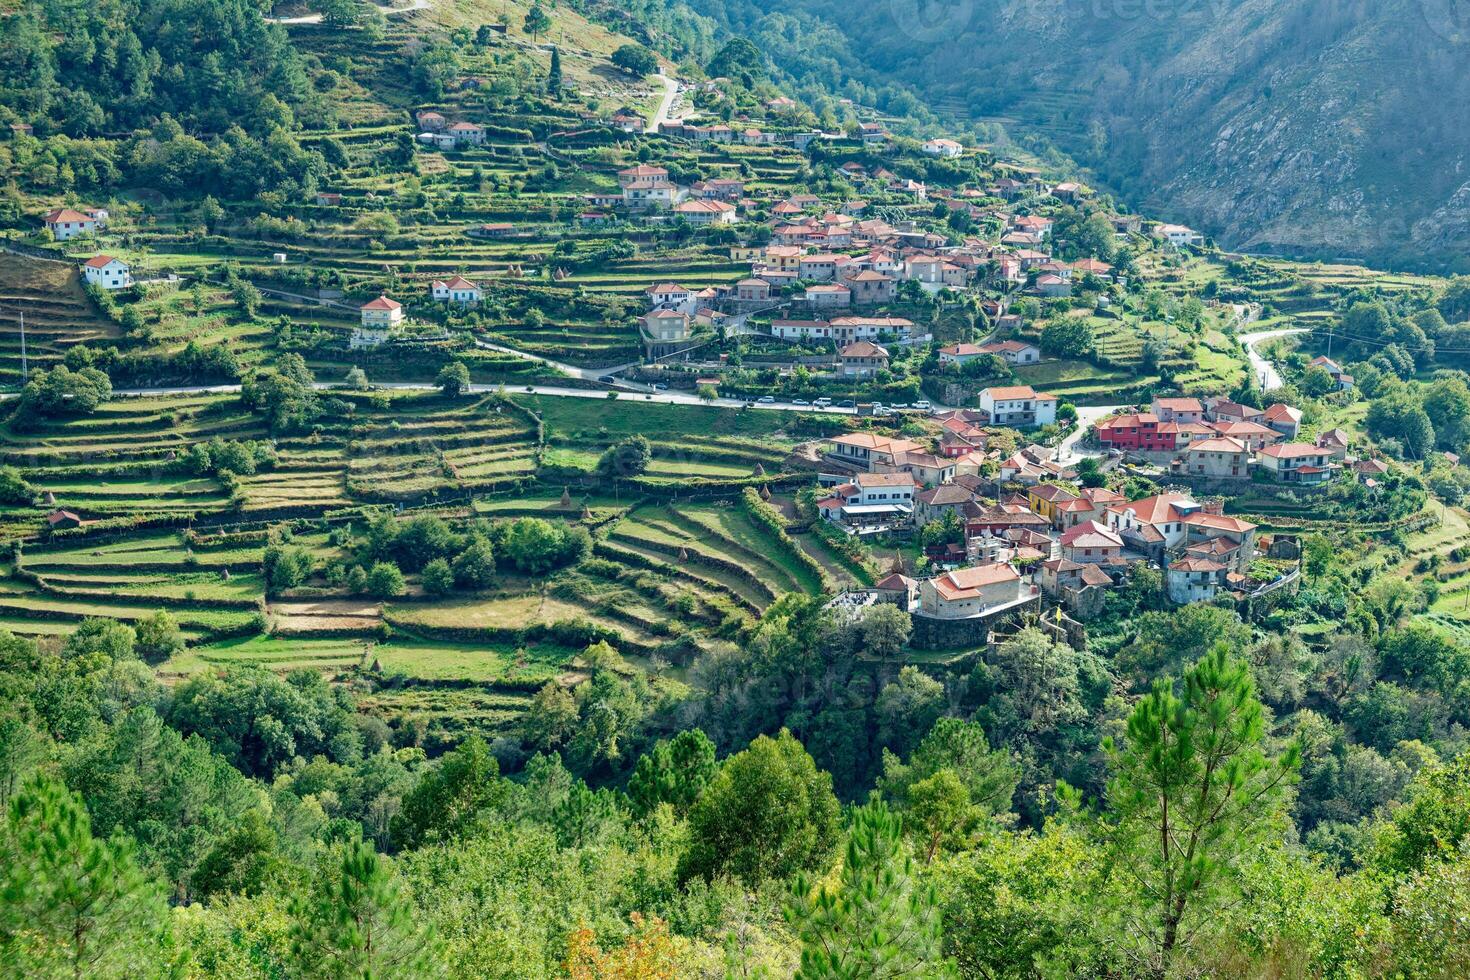 sistelo by i arcos de valdevez, portugal. lantlig turism och avkopplande med natur. ofta anses vara ett av de mest skön byar i portugal och har de smeknamn av liten portugisiska tibet. foto